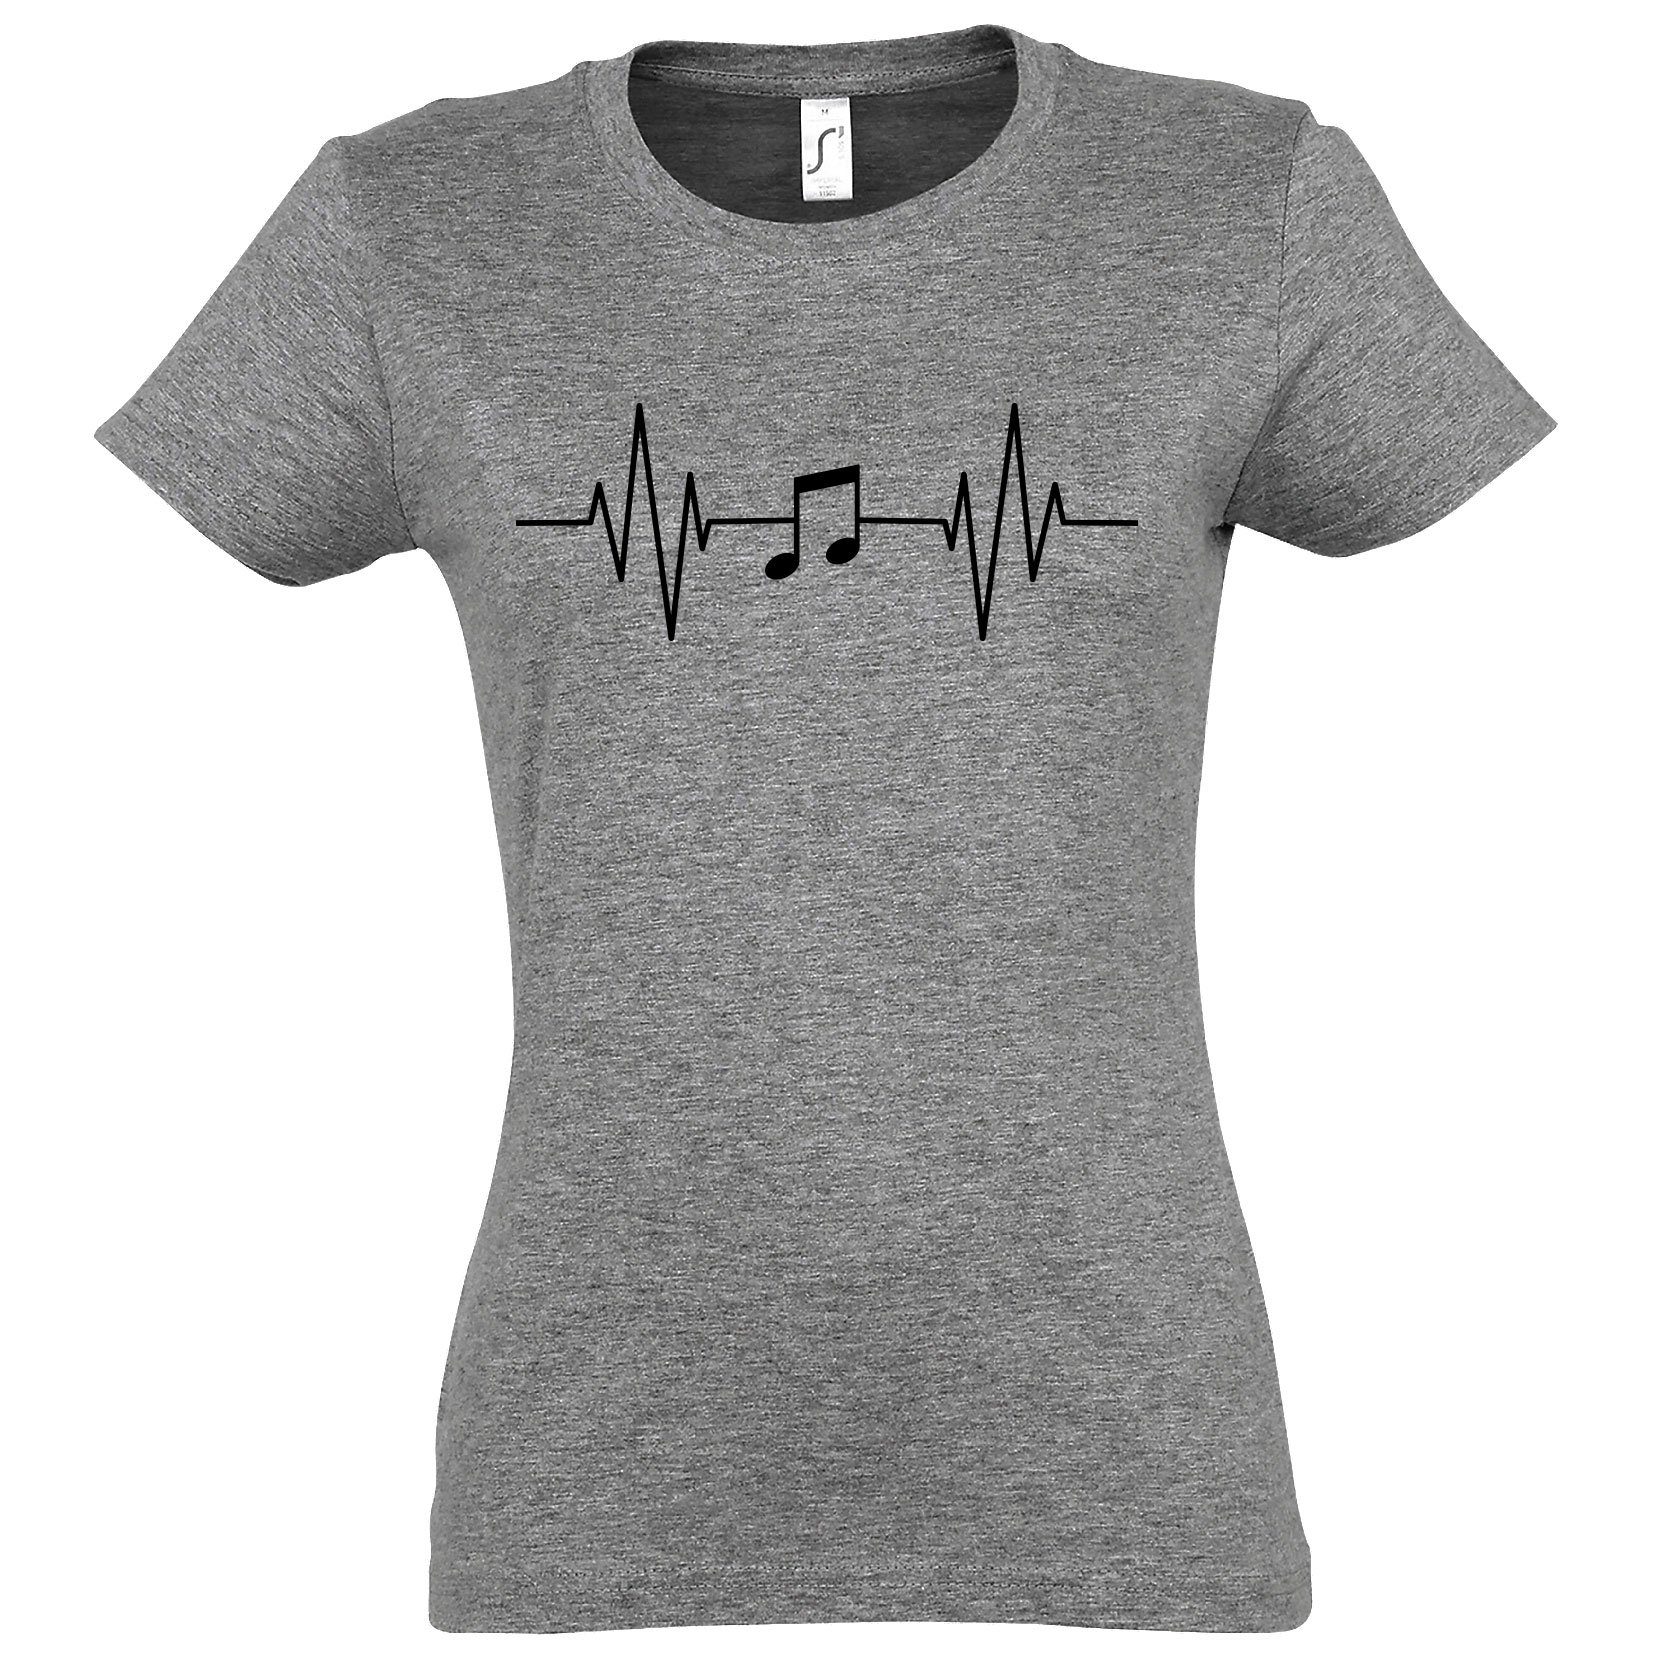 Heartbeat T-Shirt Musik Note Damen mit Shirt Grau Youth Designz Frontprint Music